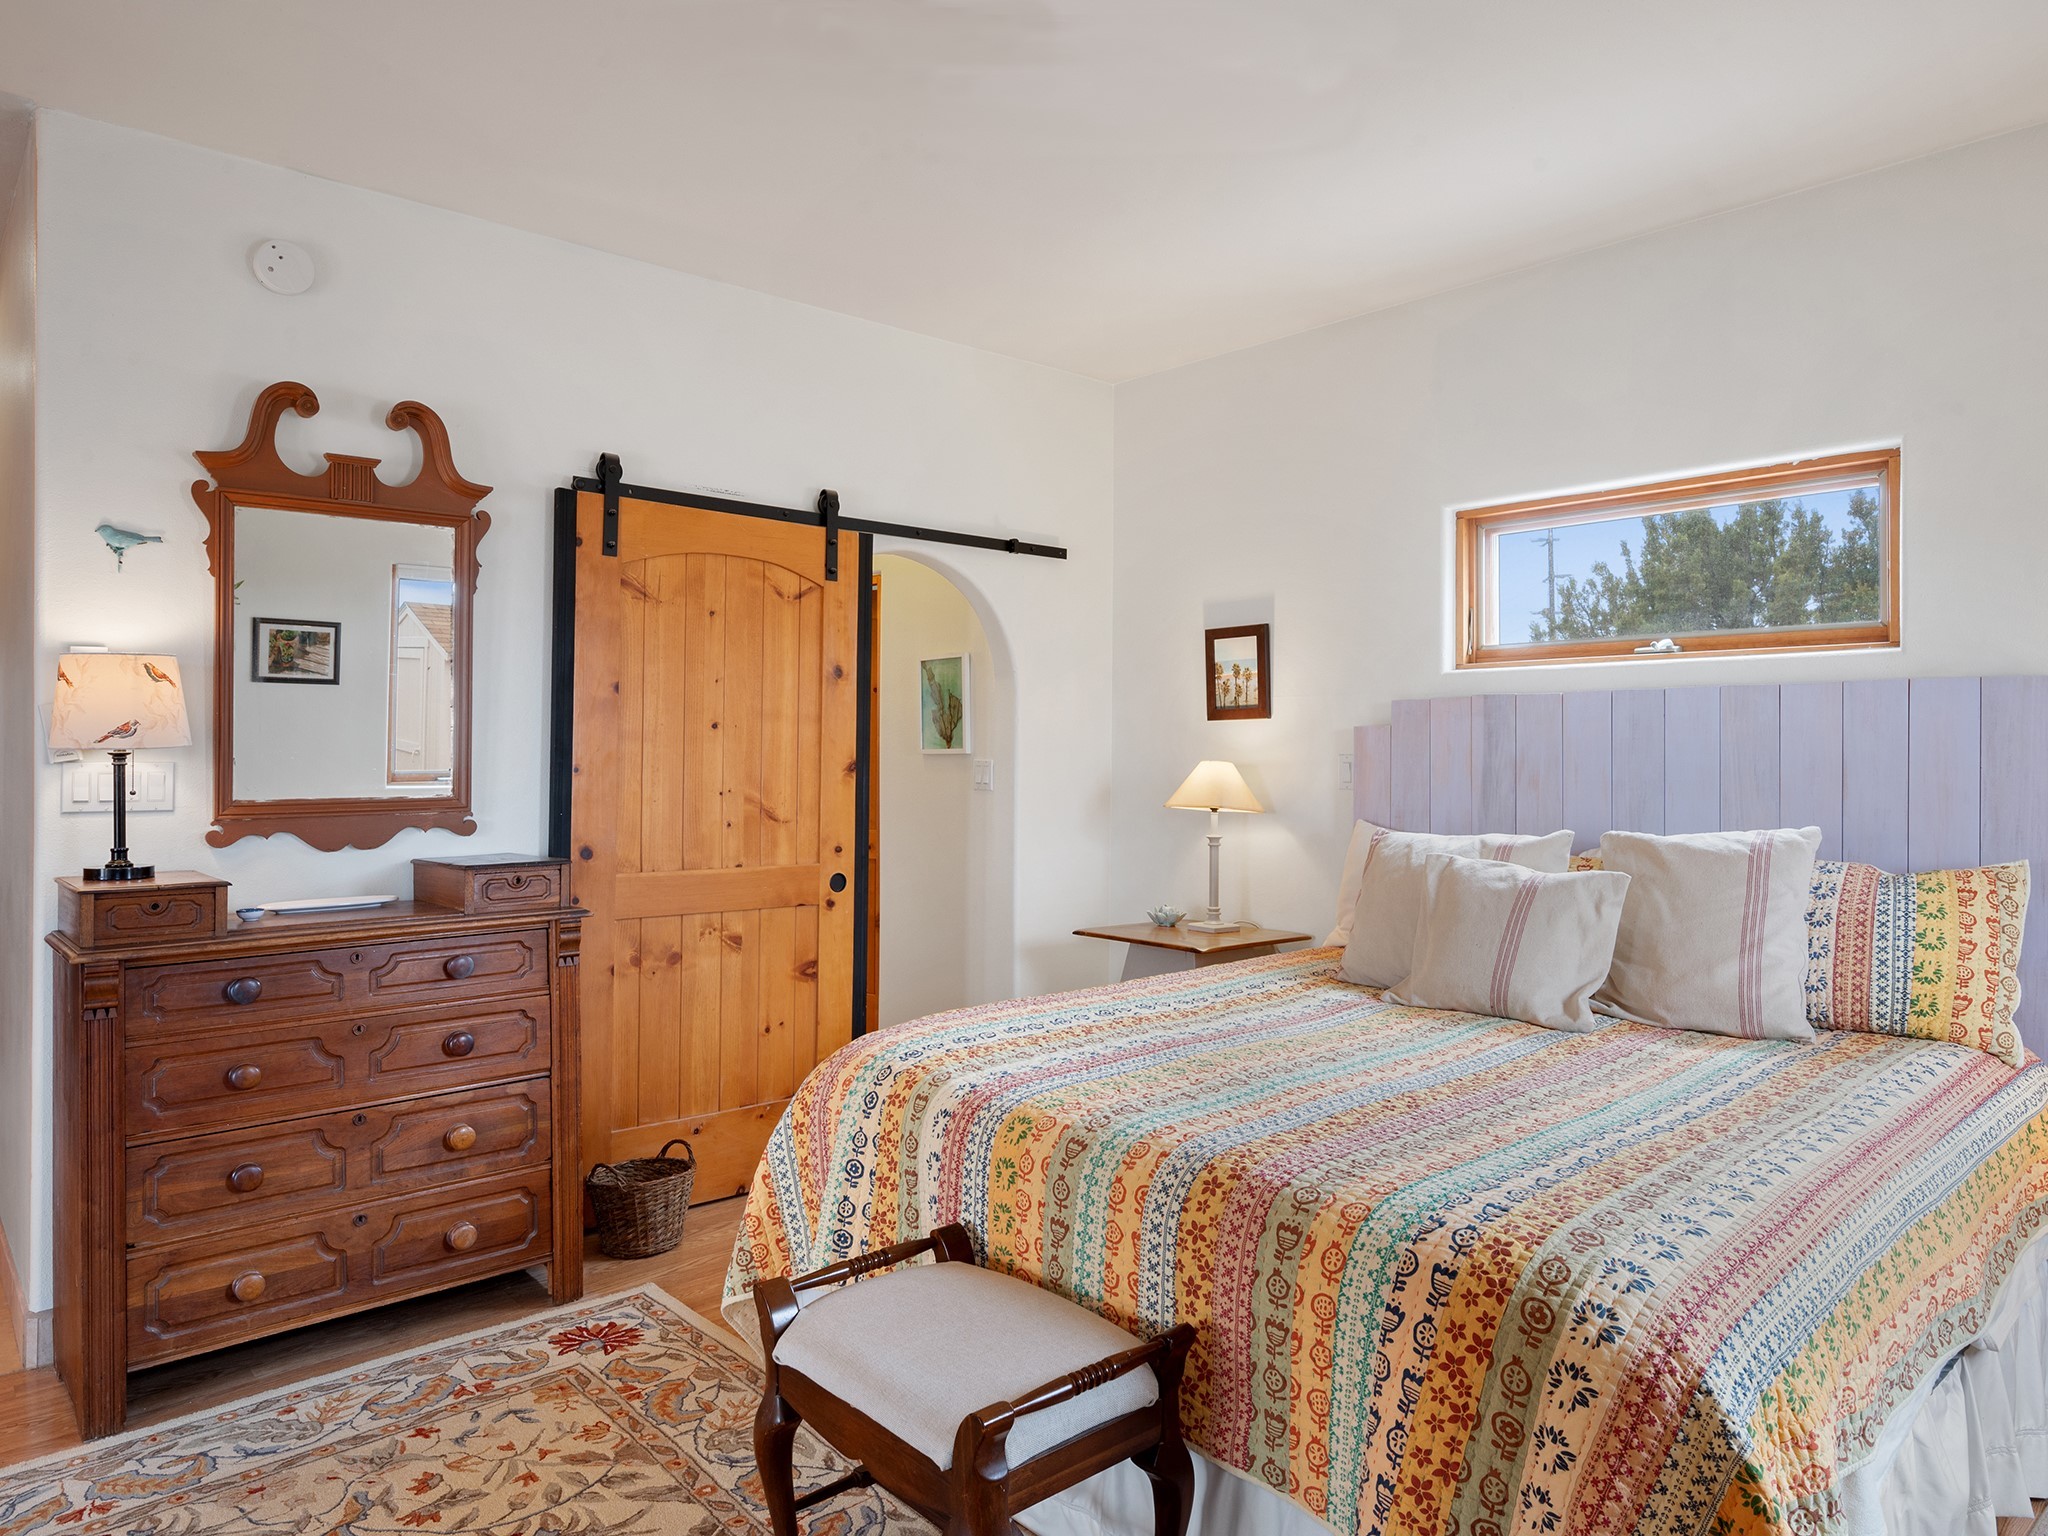 37 Encantado Road, Santa Fe, New Mexico 87508, 3 Bedrooms Bedrooms, ,2 BathroomsBathrooms,Residential,For Sale,37 Encantado Road,202335097